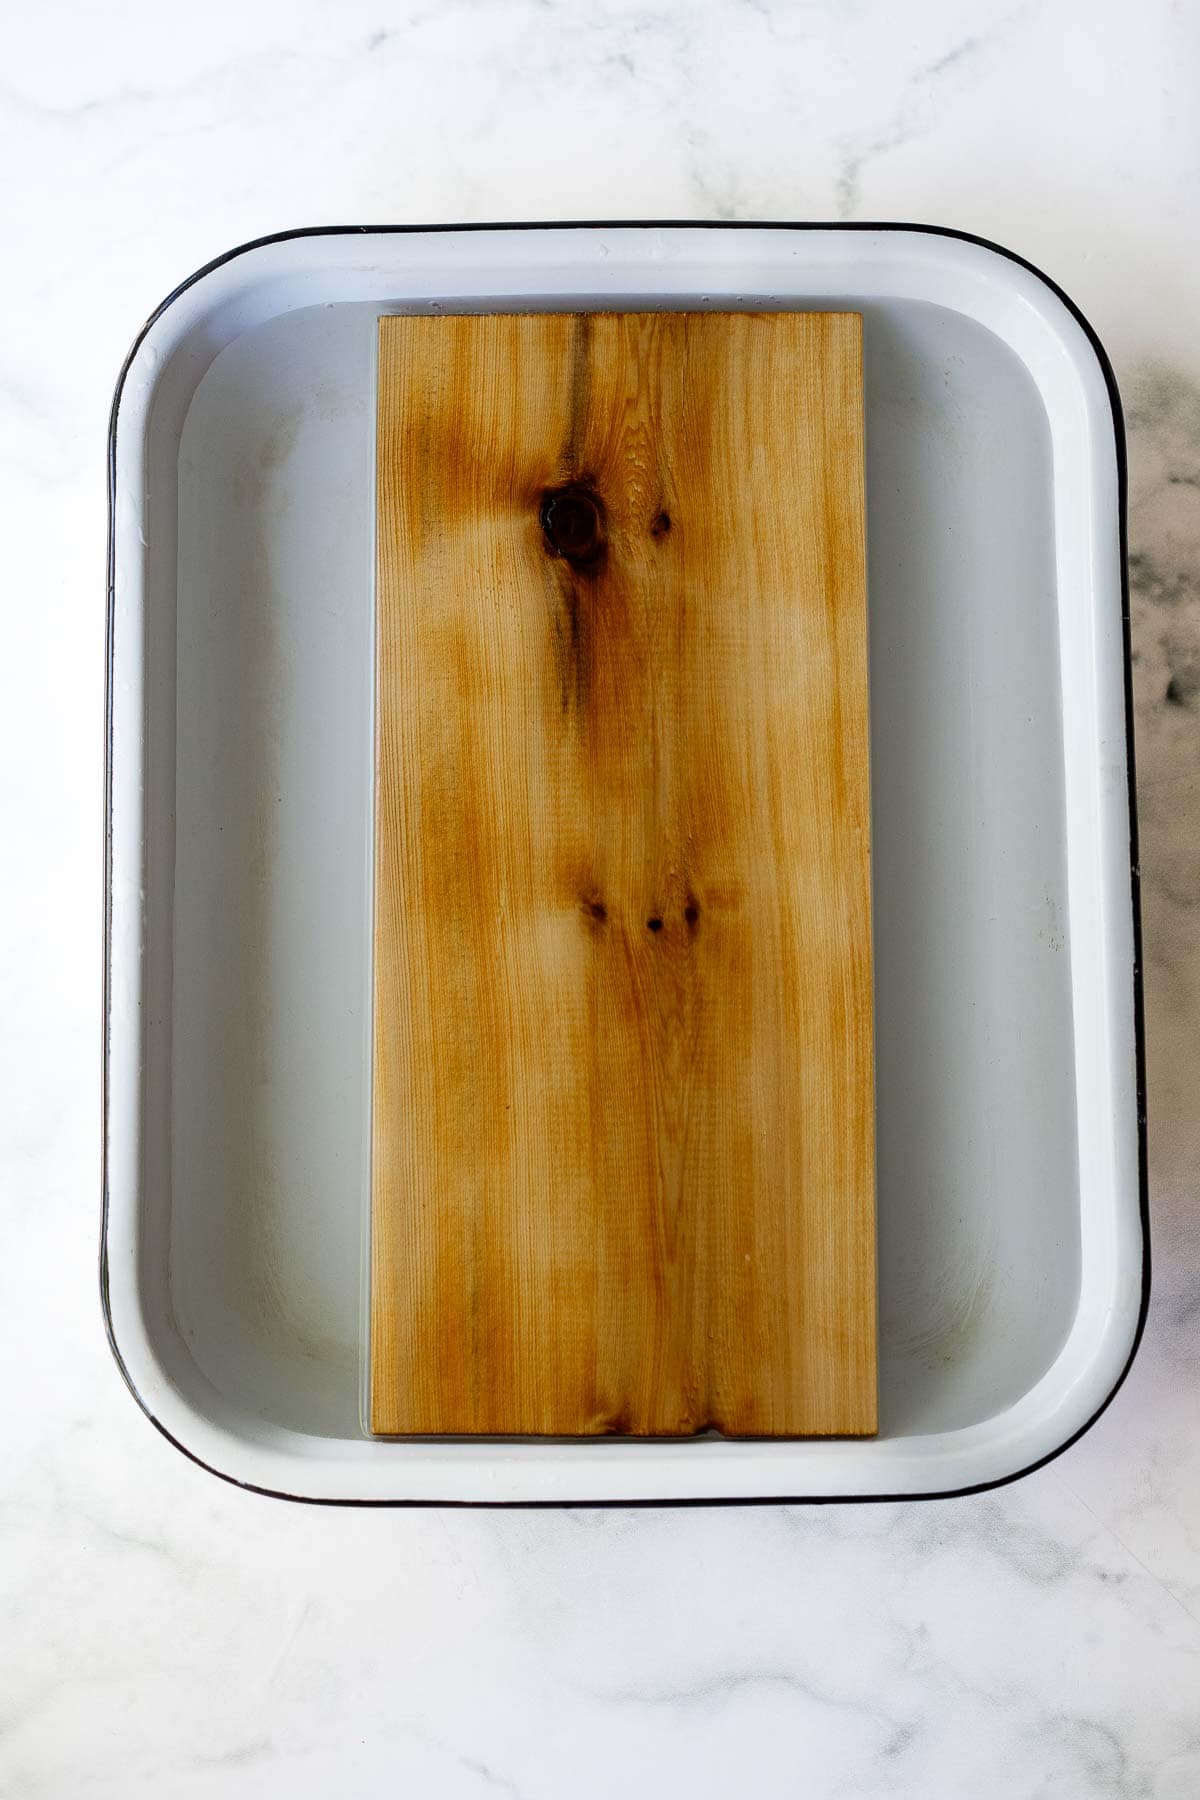 cedar plank soaking in water. 